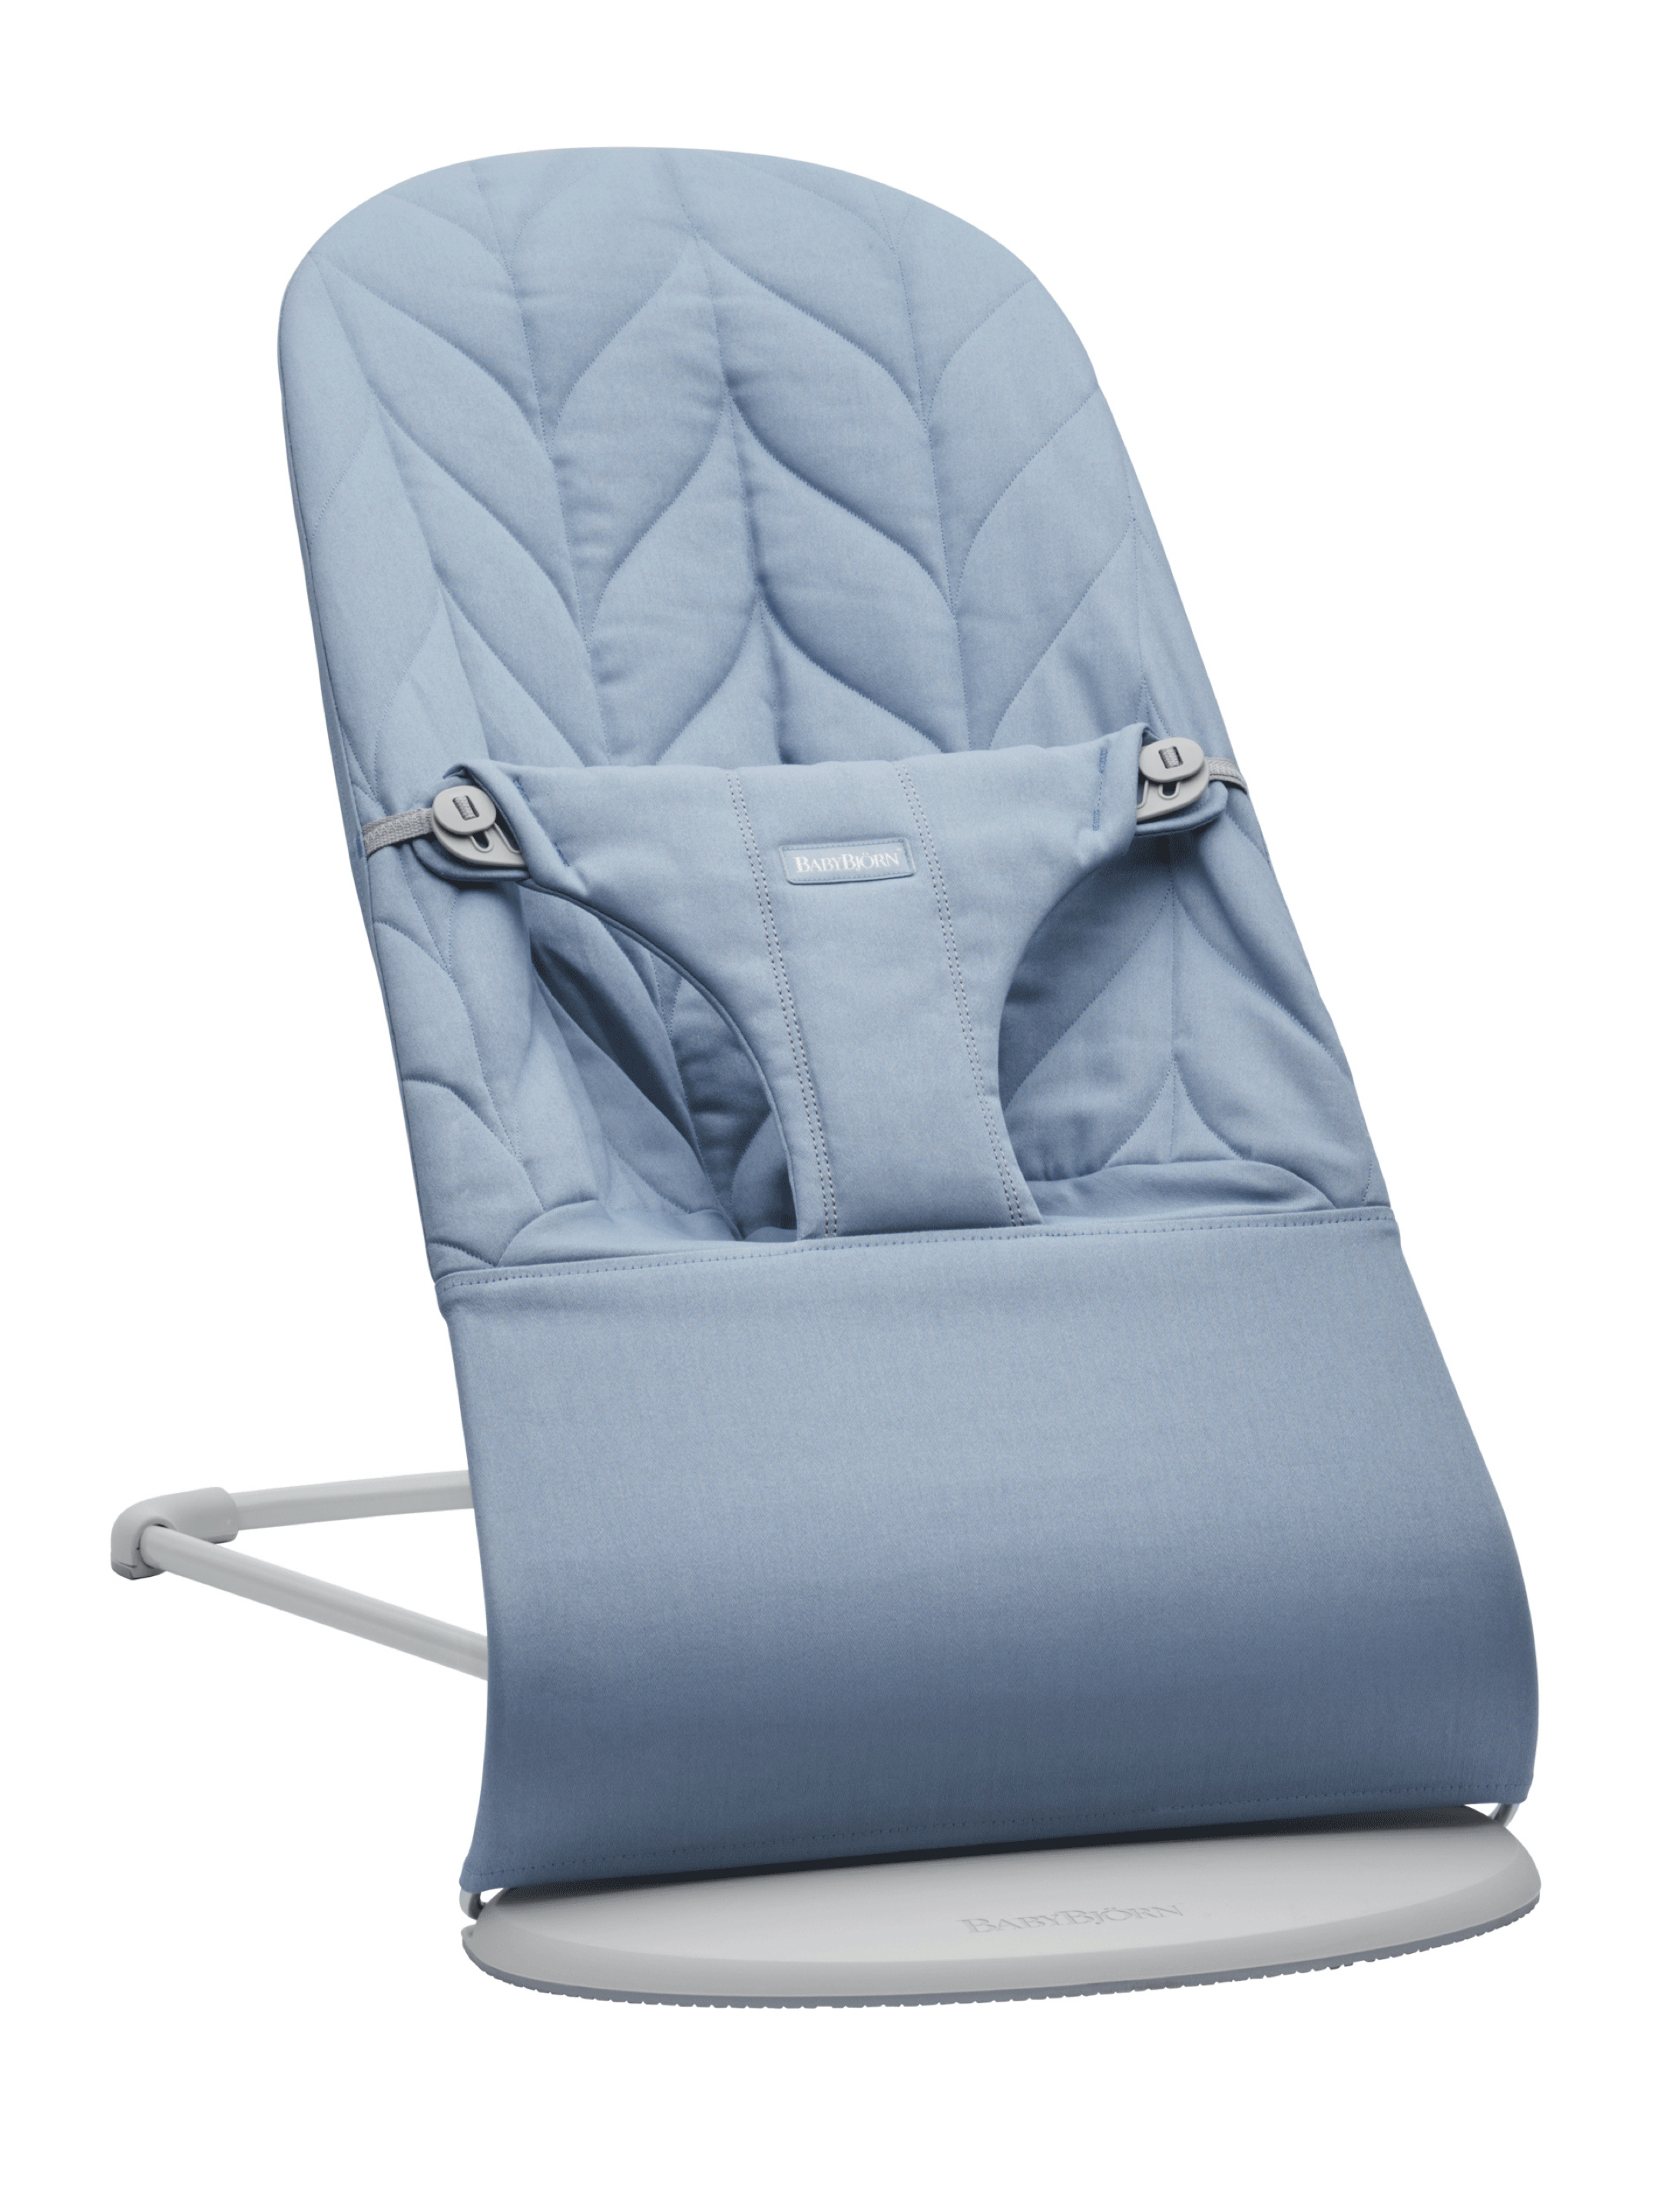 كرسي هزاز للاطفال transat bébé Babybjorn balance soft